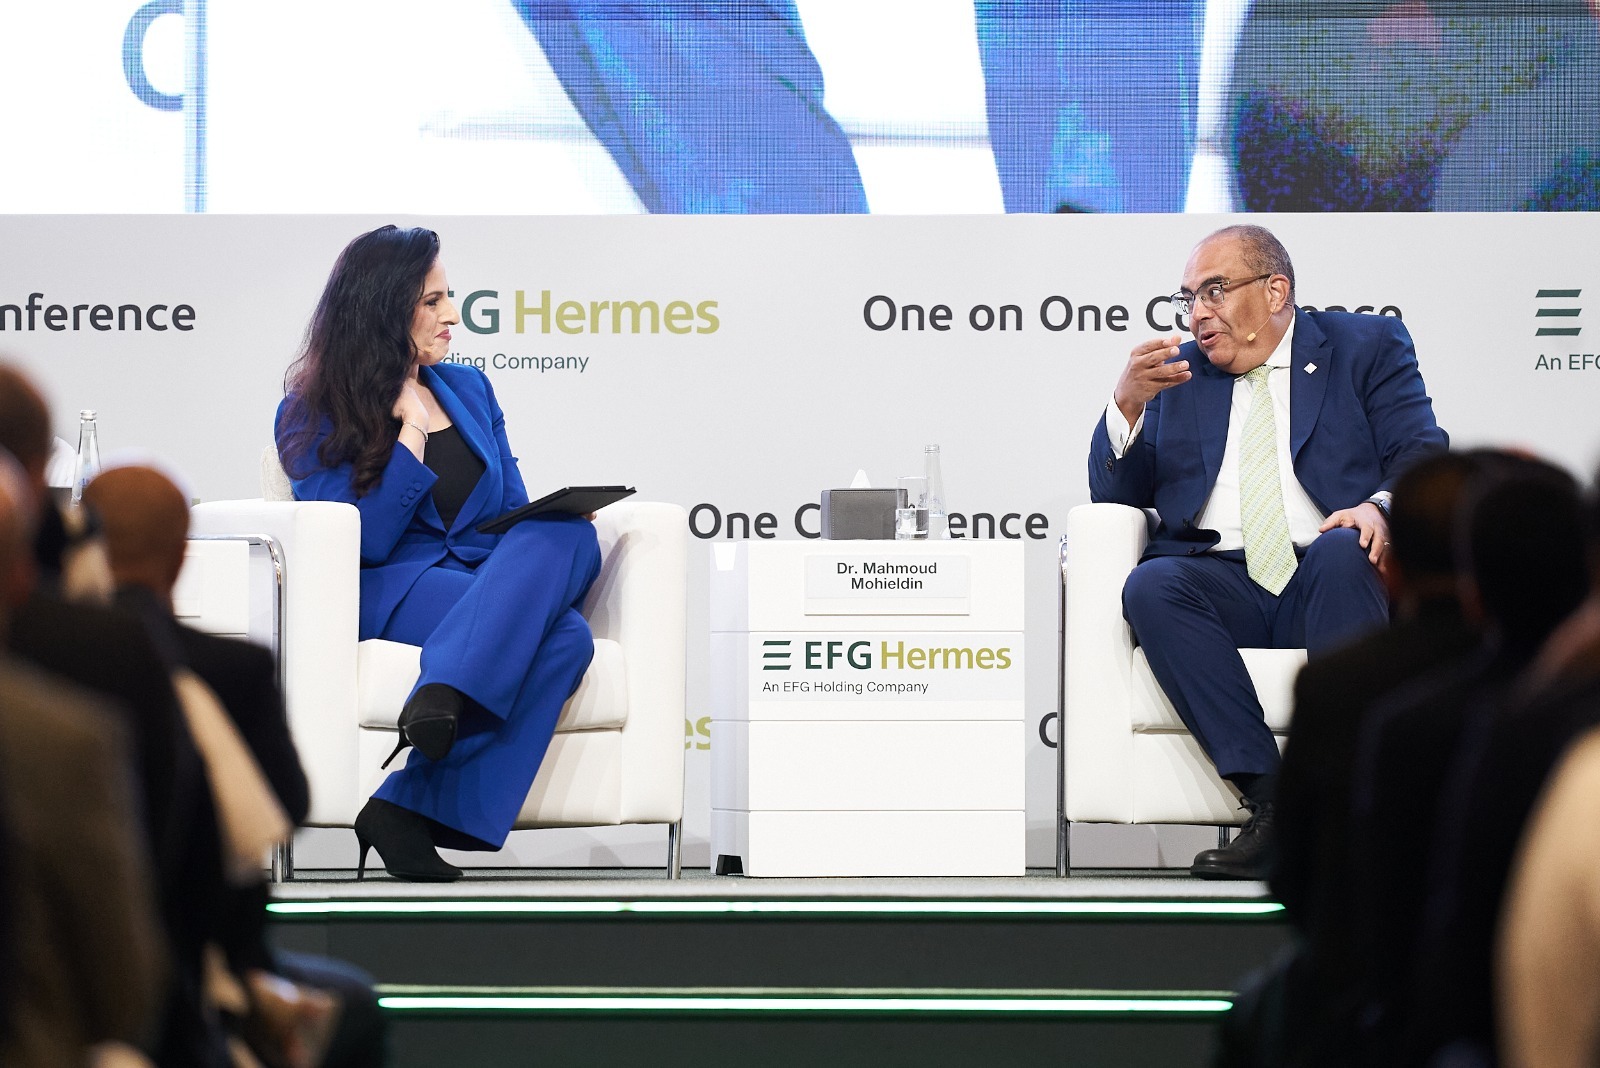 انطلاق أعمال الدورة السنوية الثامنة عشر من المؤتمر الاستثمارى EFG Hermes One On One (1)